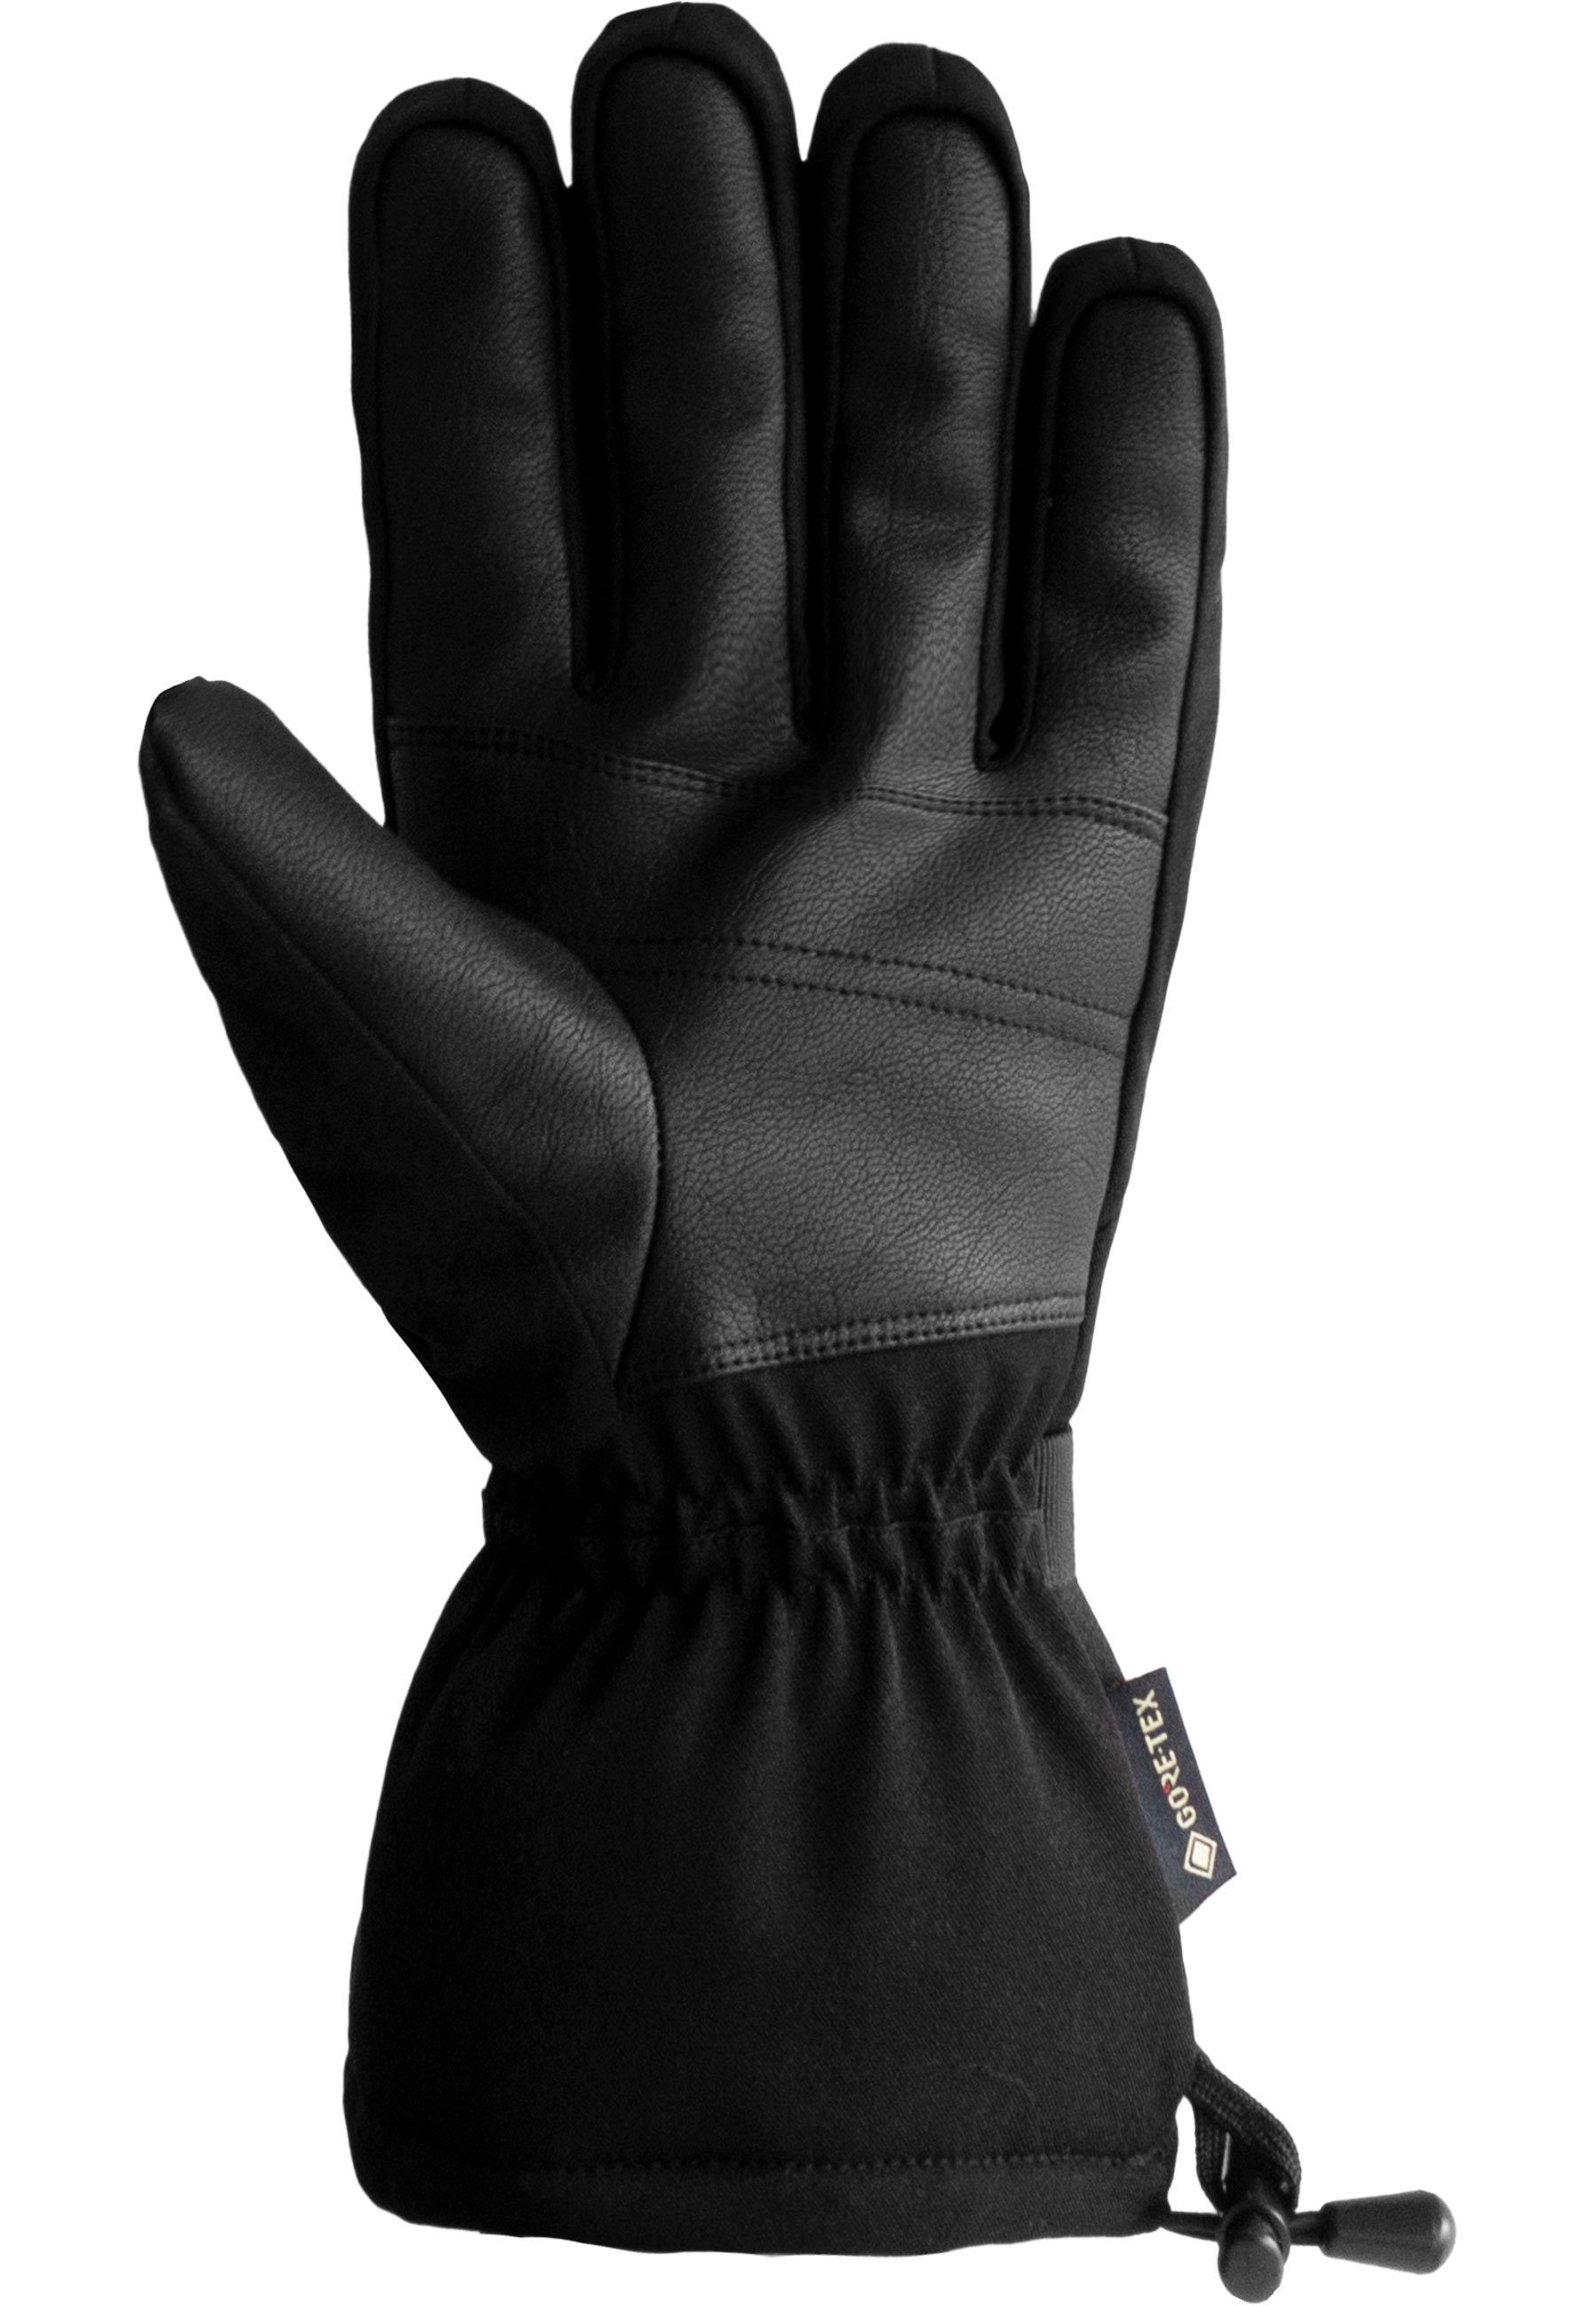 GORE-TEX Winter atmungsaktivem Glove aus und Reusch wasserdichtem Skihandschuhe Material Warm